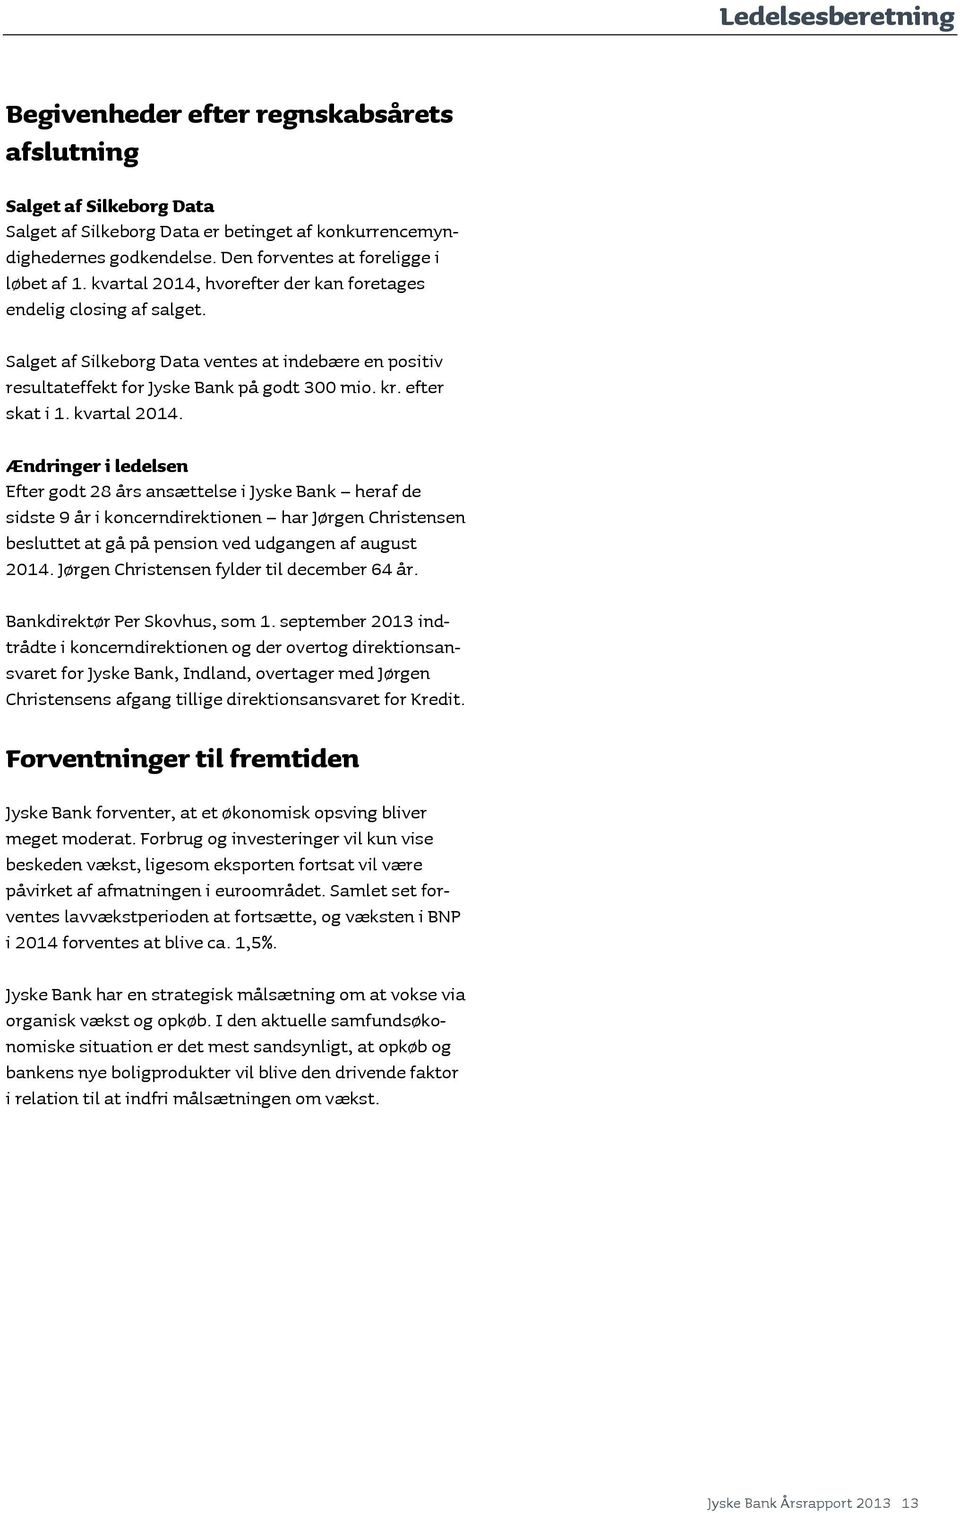 Salget af Silkeborg Data ventes at indebære en positiv resultateffekt for Jyske Bank på godt 300 mio. kr. efter skat i 1. kvartal 2014.